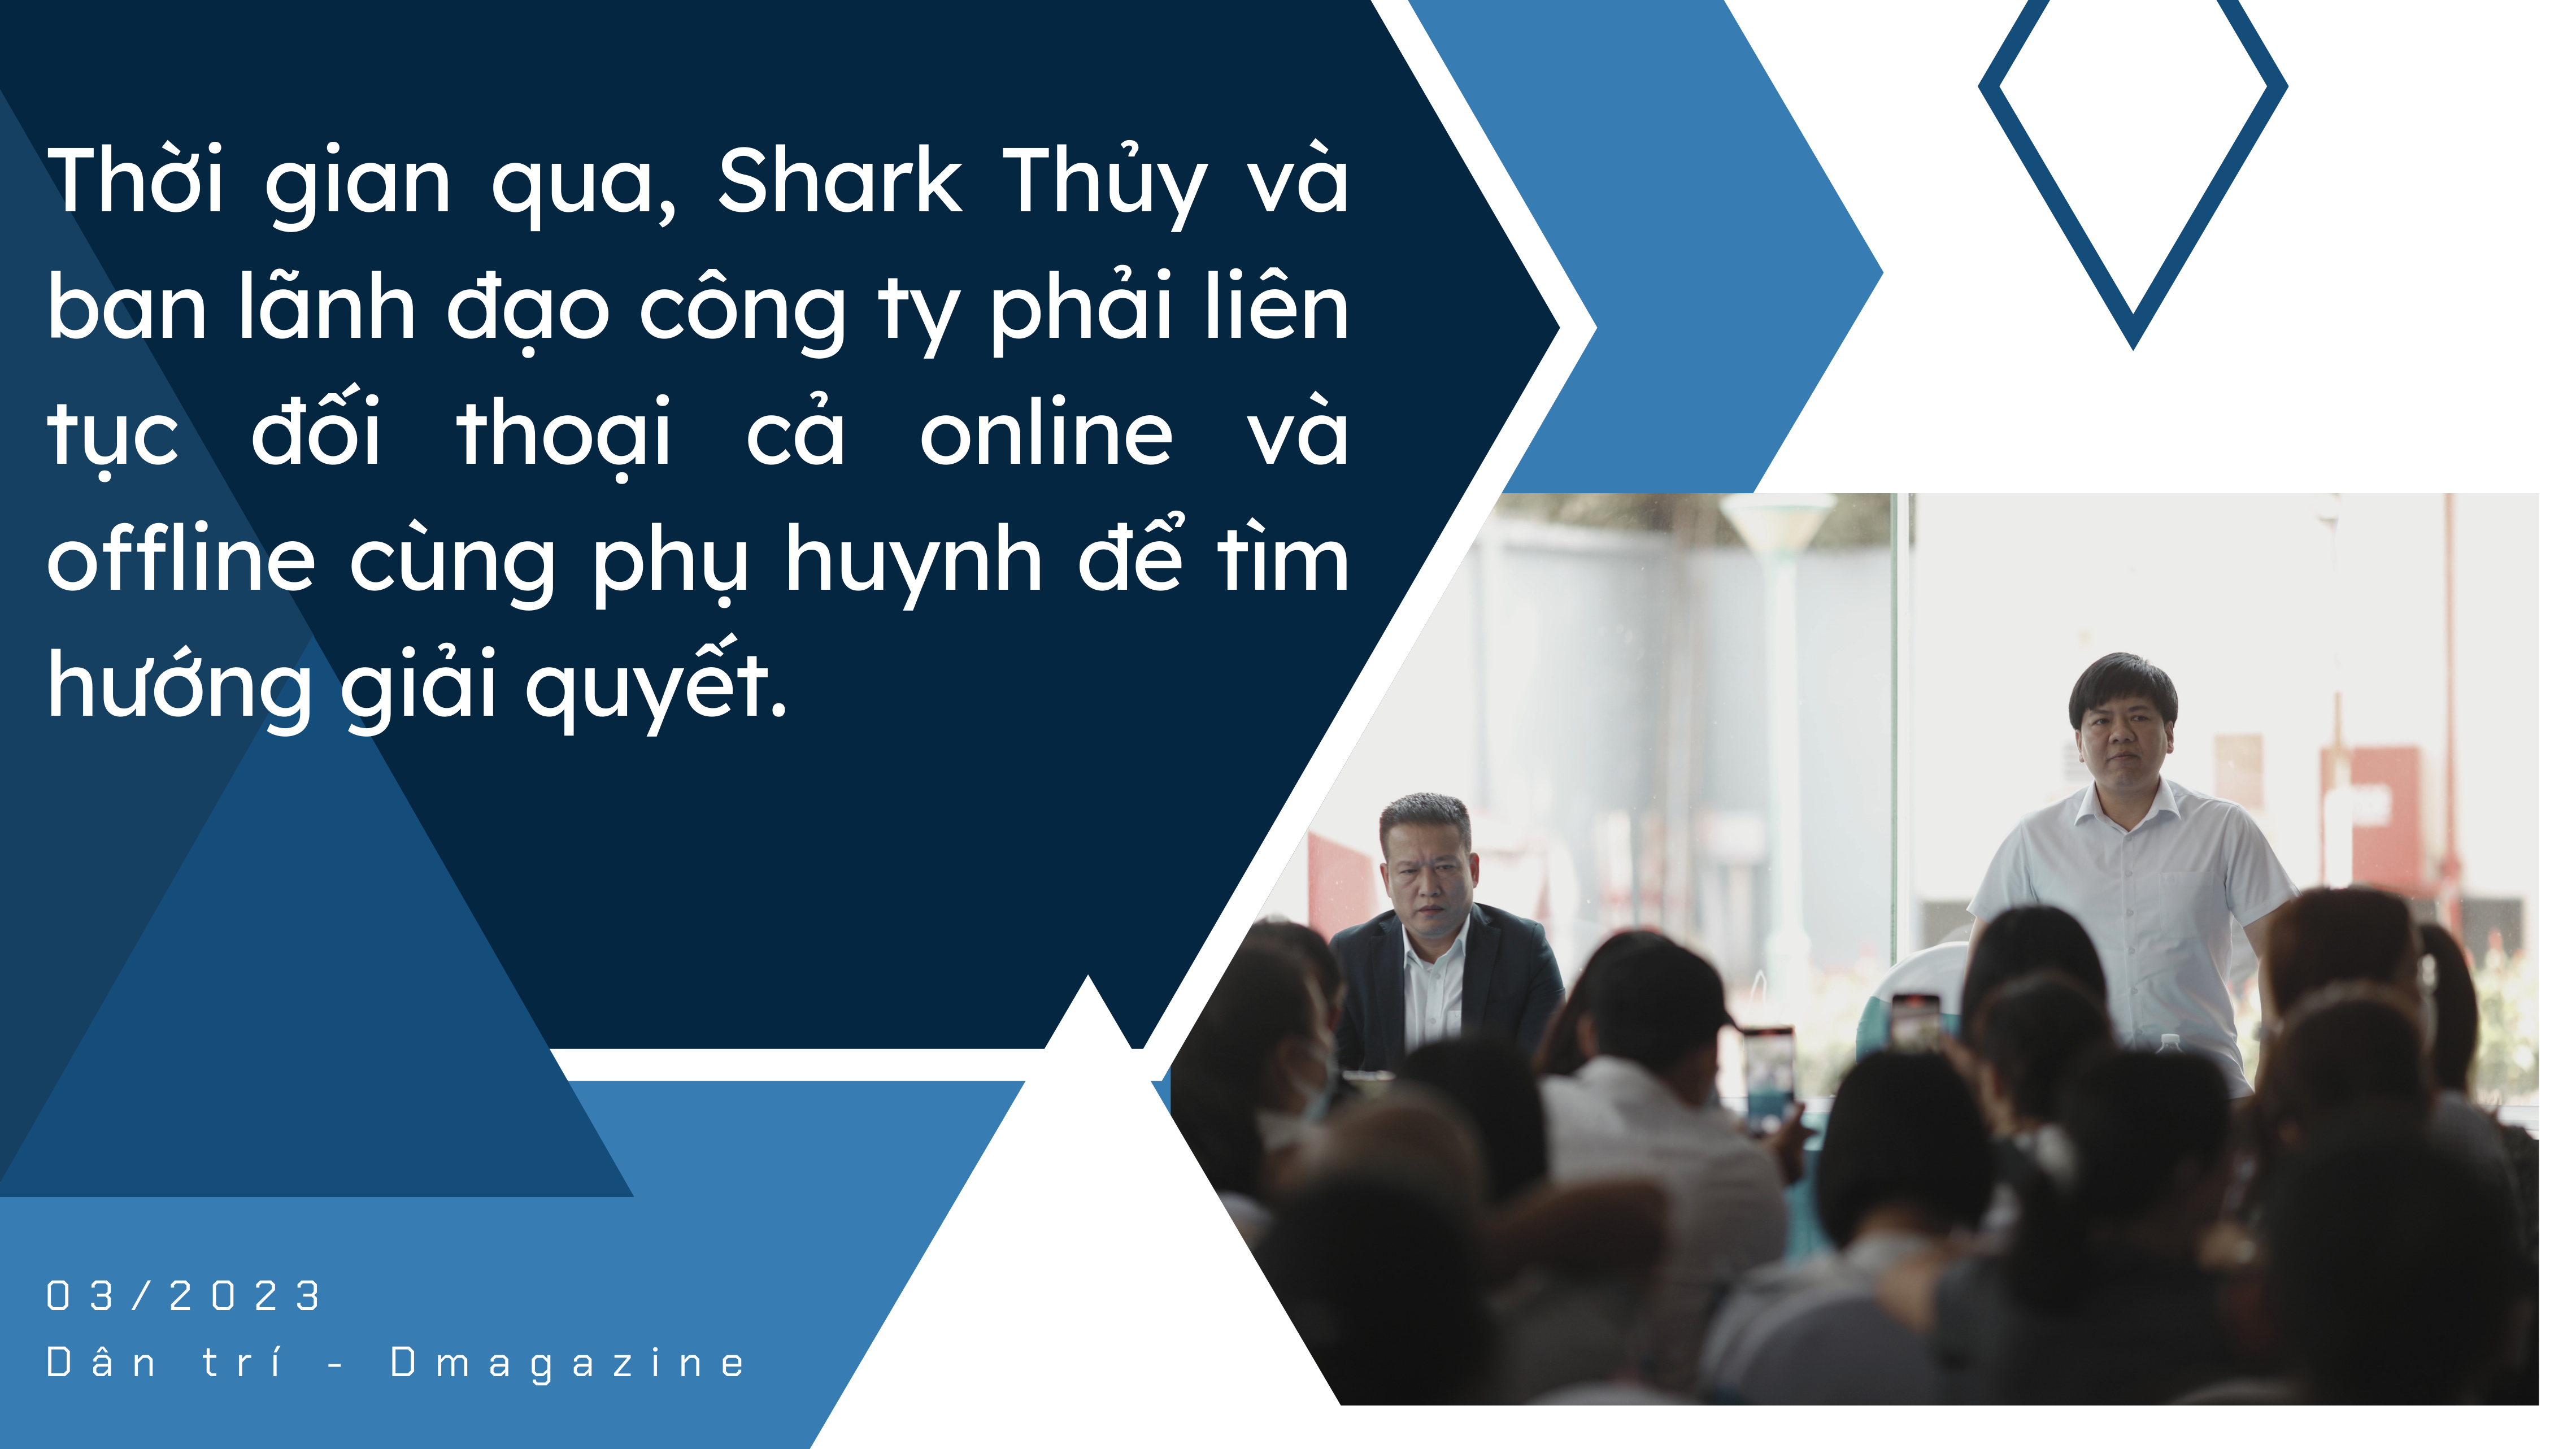 Shark Thủy và Apax Leaders: Càng đối thoại phụ huynh càng nổi giận - 2